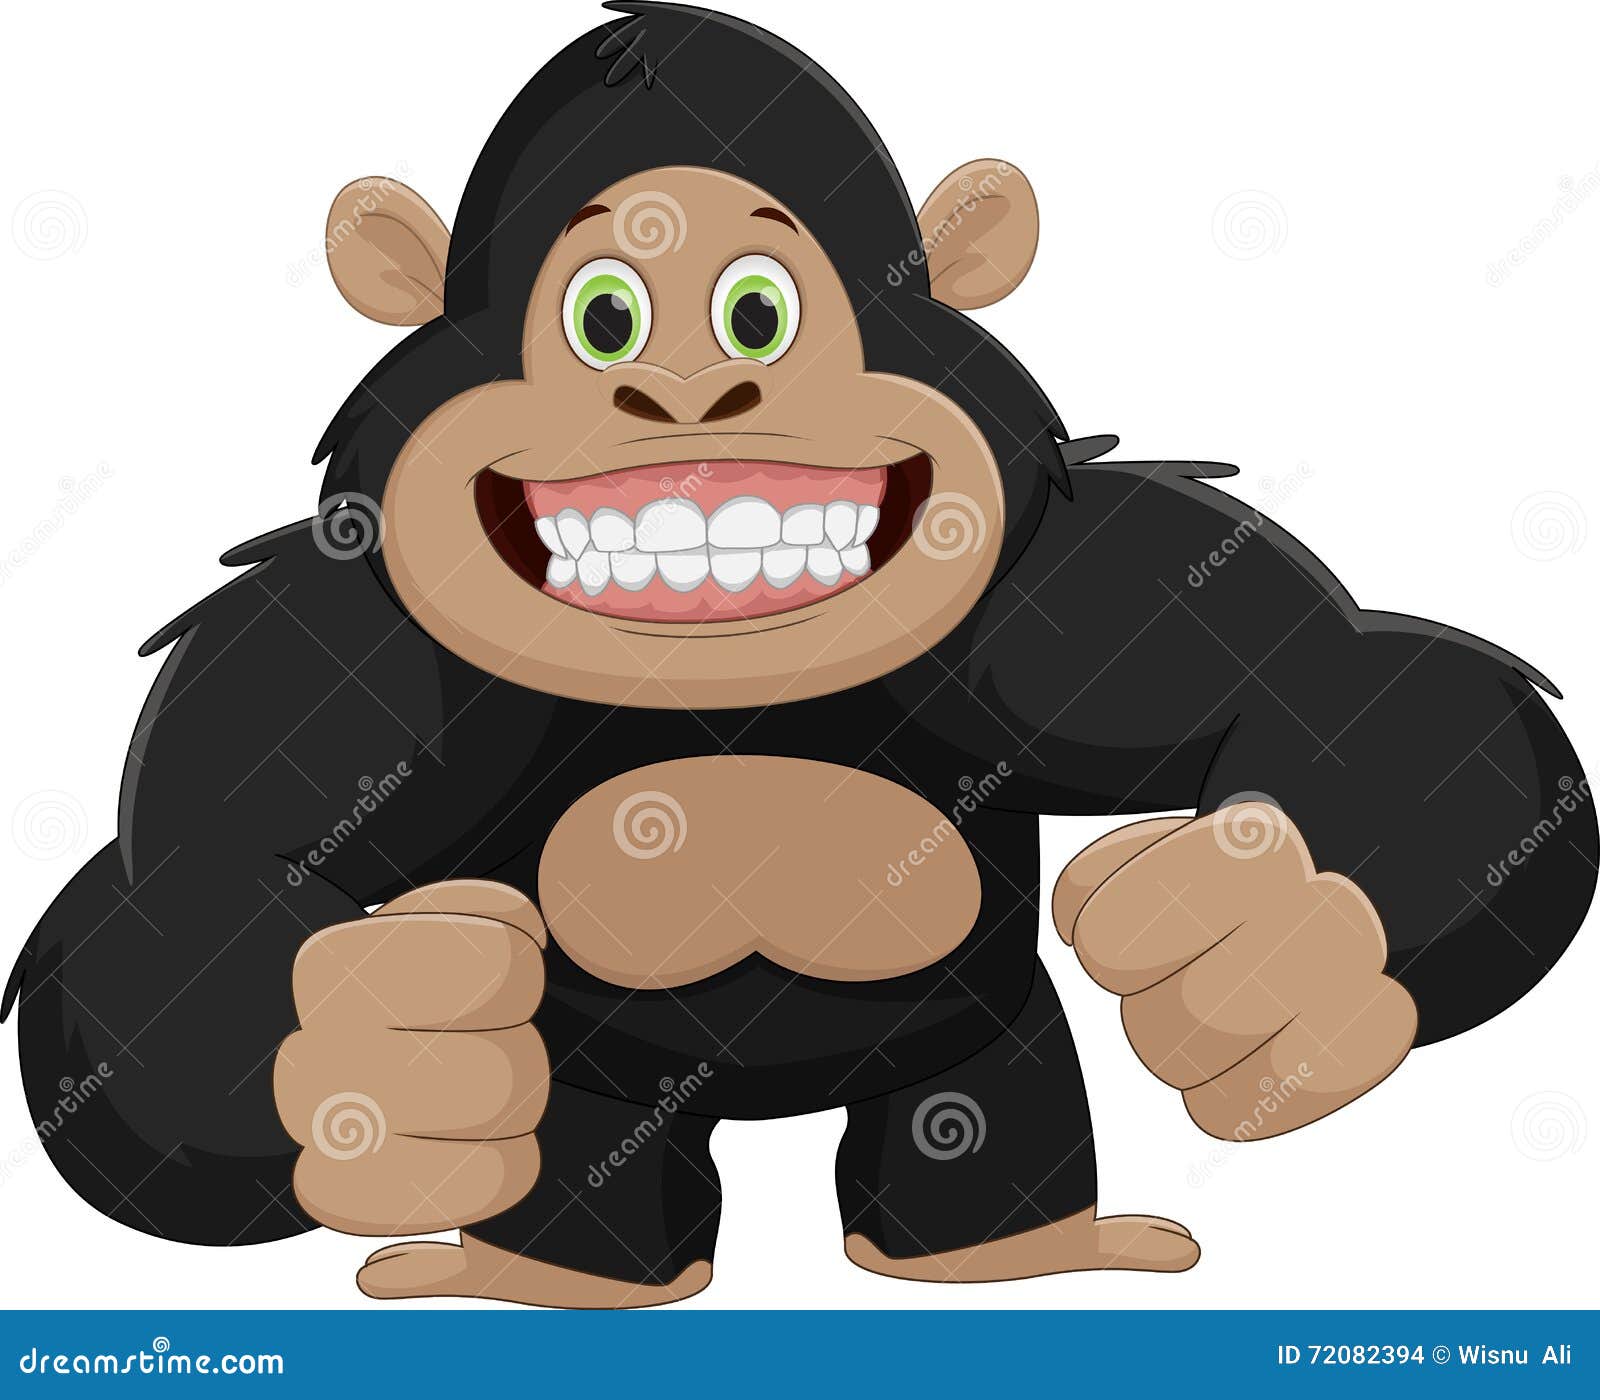 Cute gorilla cartoon stock vector. Illustration of monkey - 72082394